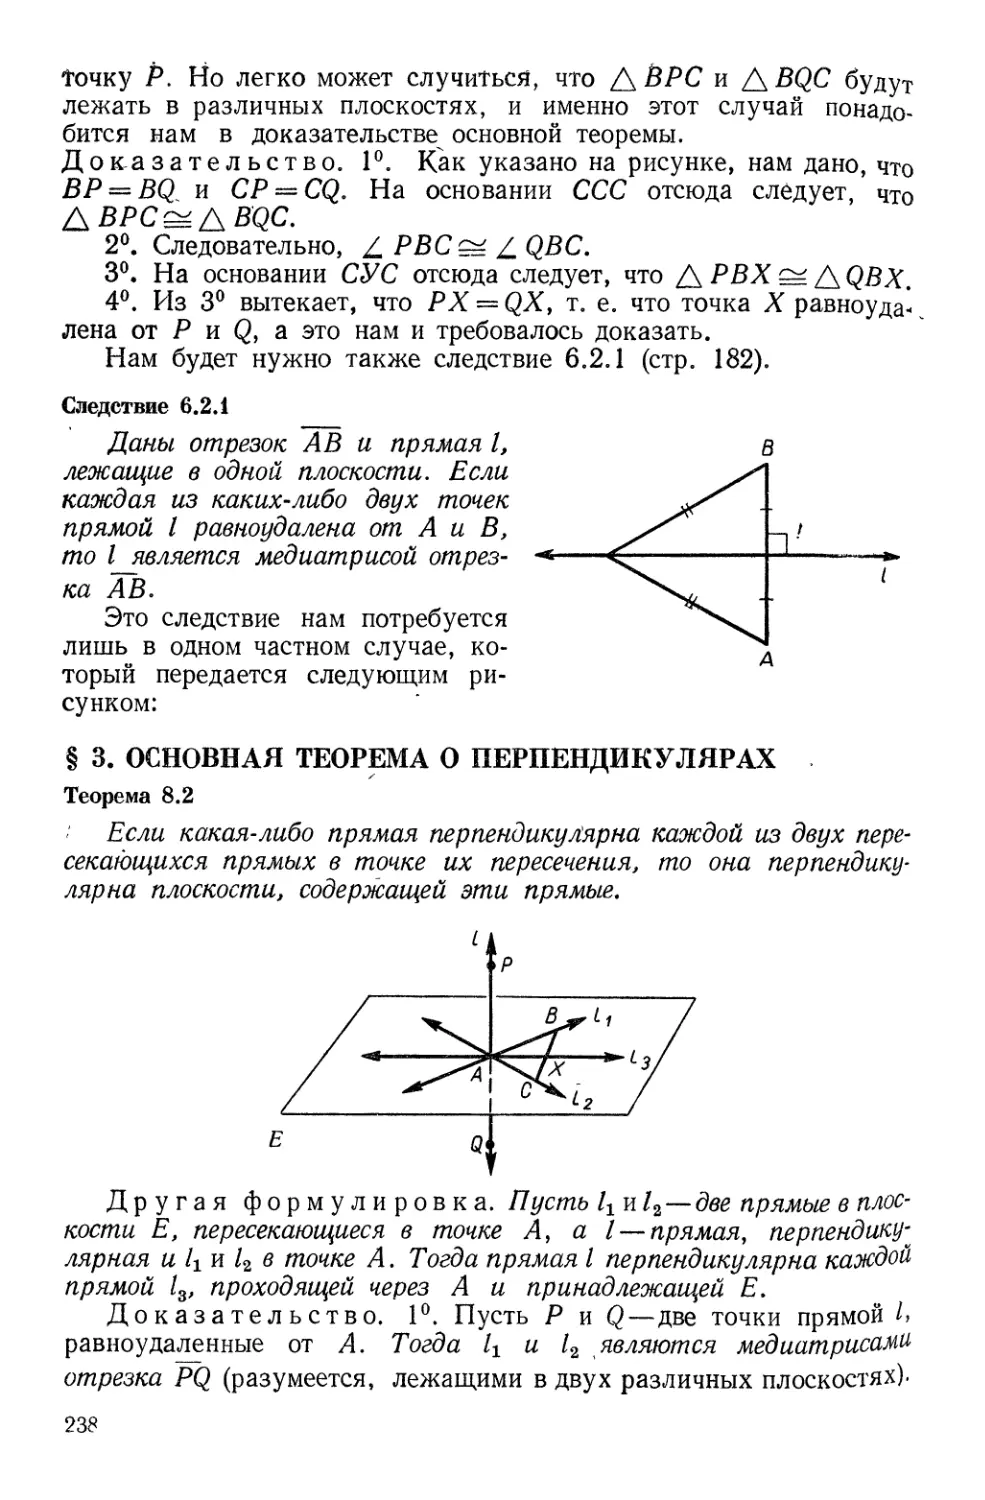 § 3. Основная теорема о перпендикулярах